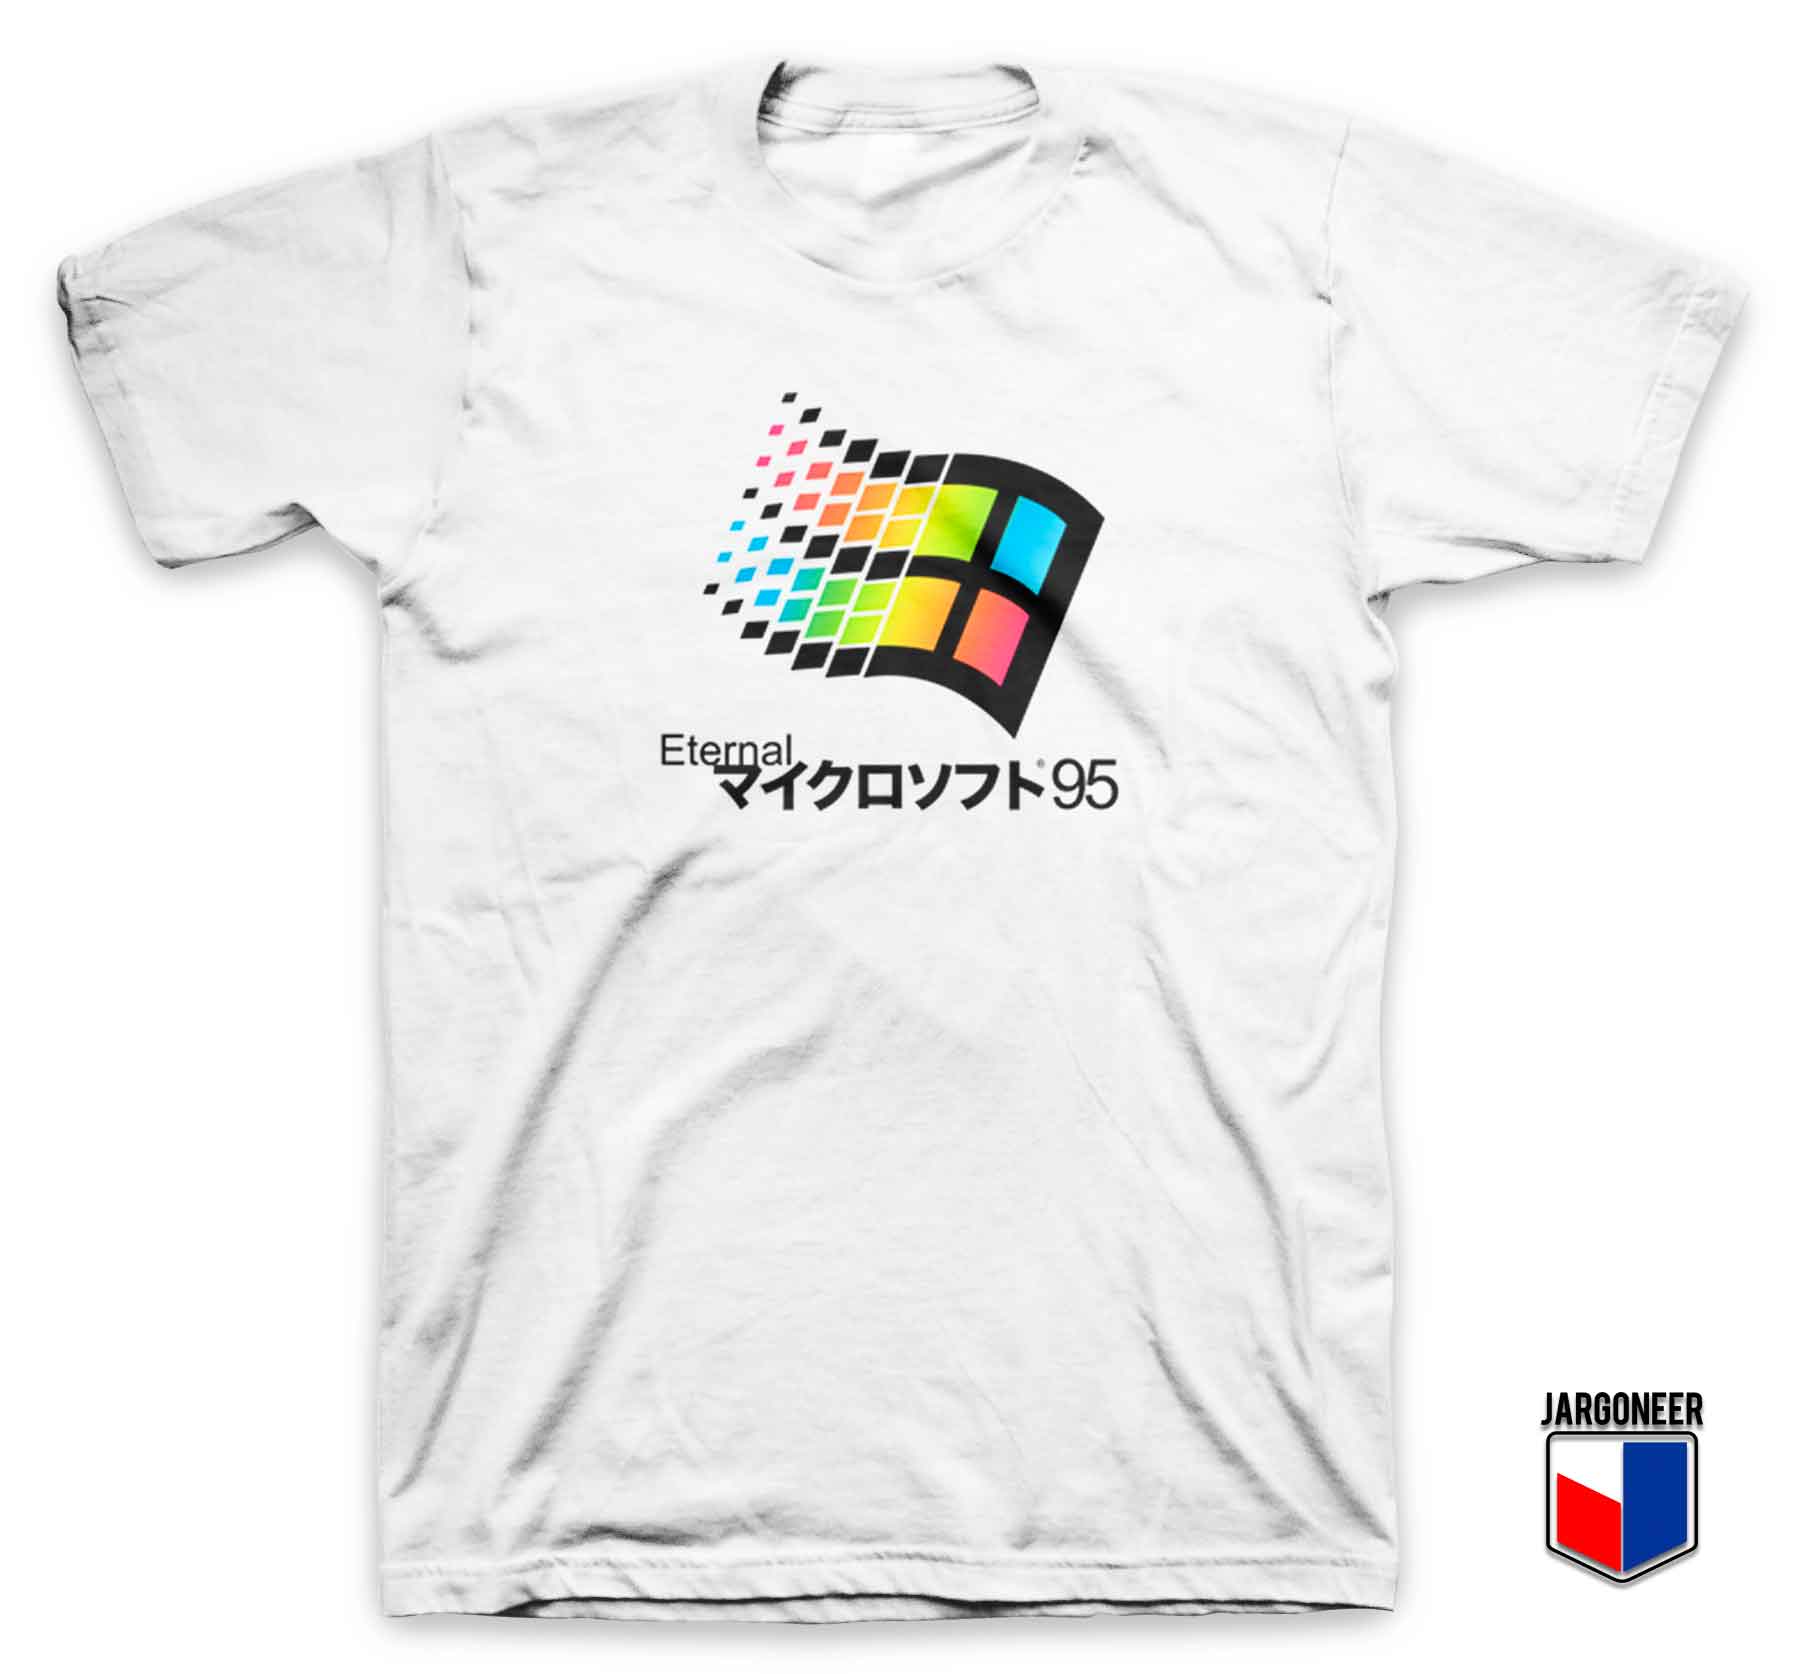 Eternal Windows - Shop Unique Graphic Cool Shirt Designs